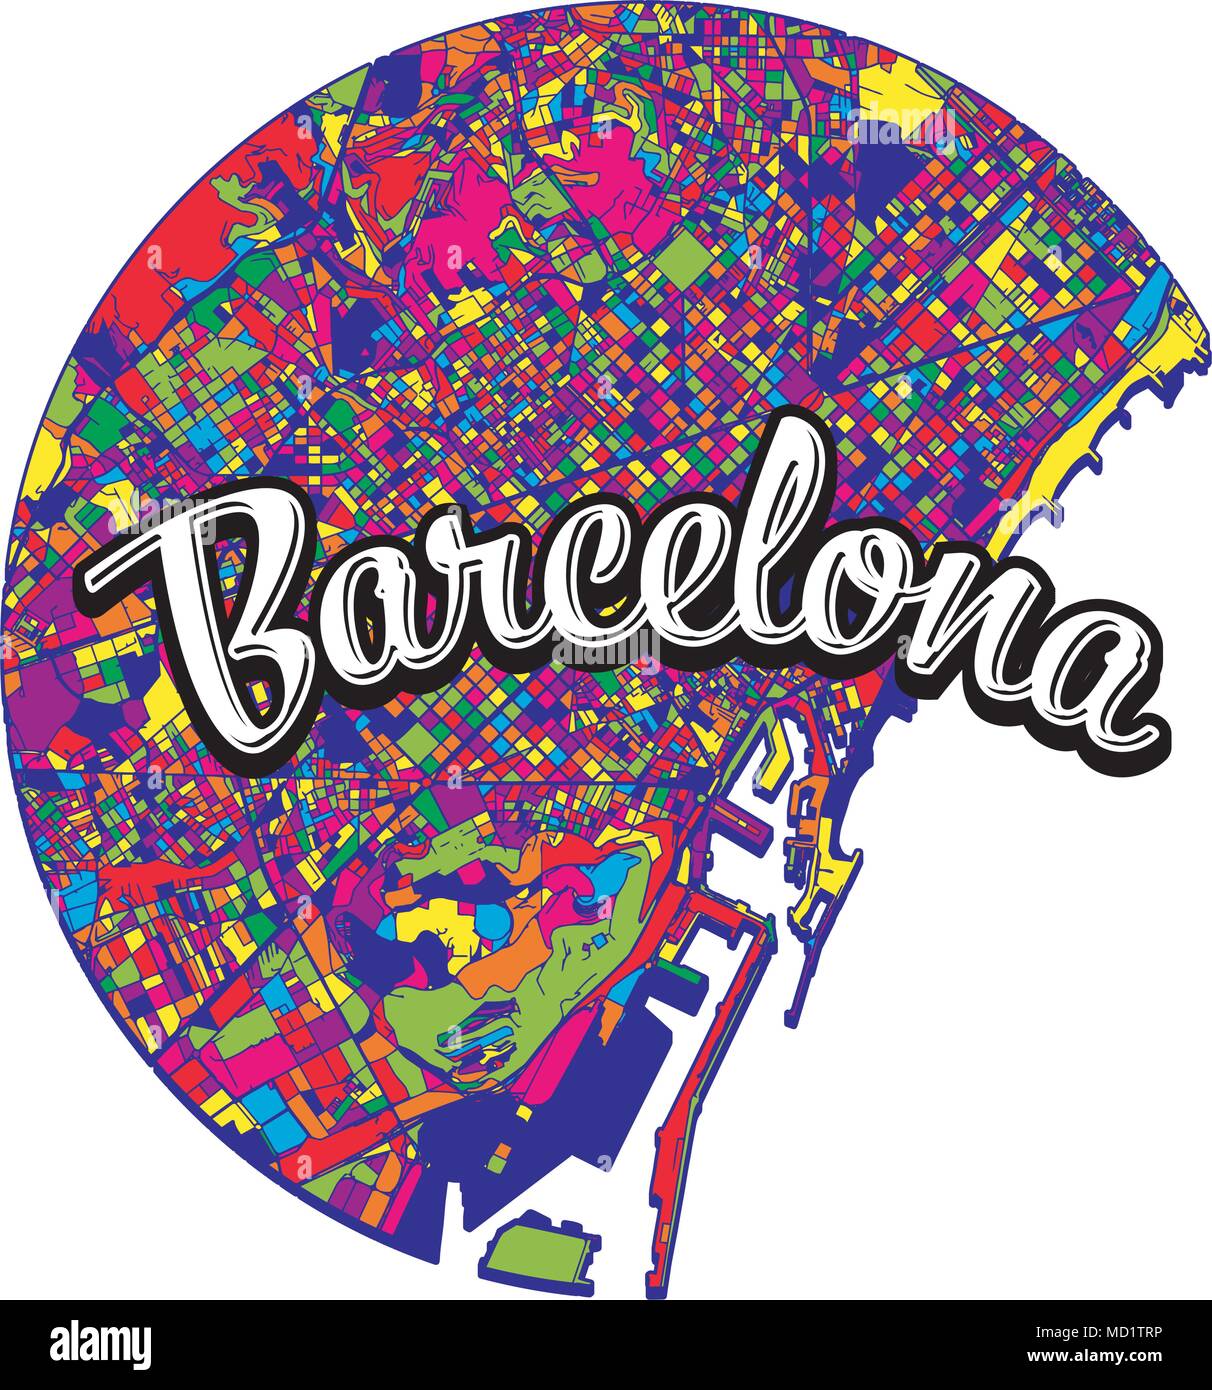 Mappa di Barcellona con scritto il titolo. Immagine vettoriale per il marketing digitale e stampe poster. Illustrazione Vettoriale